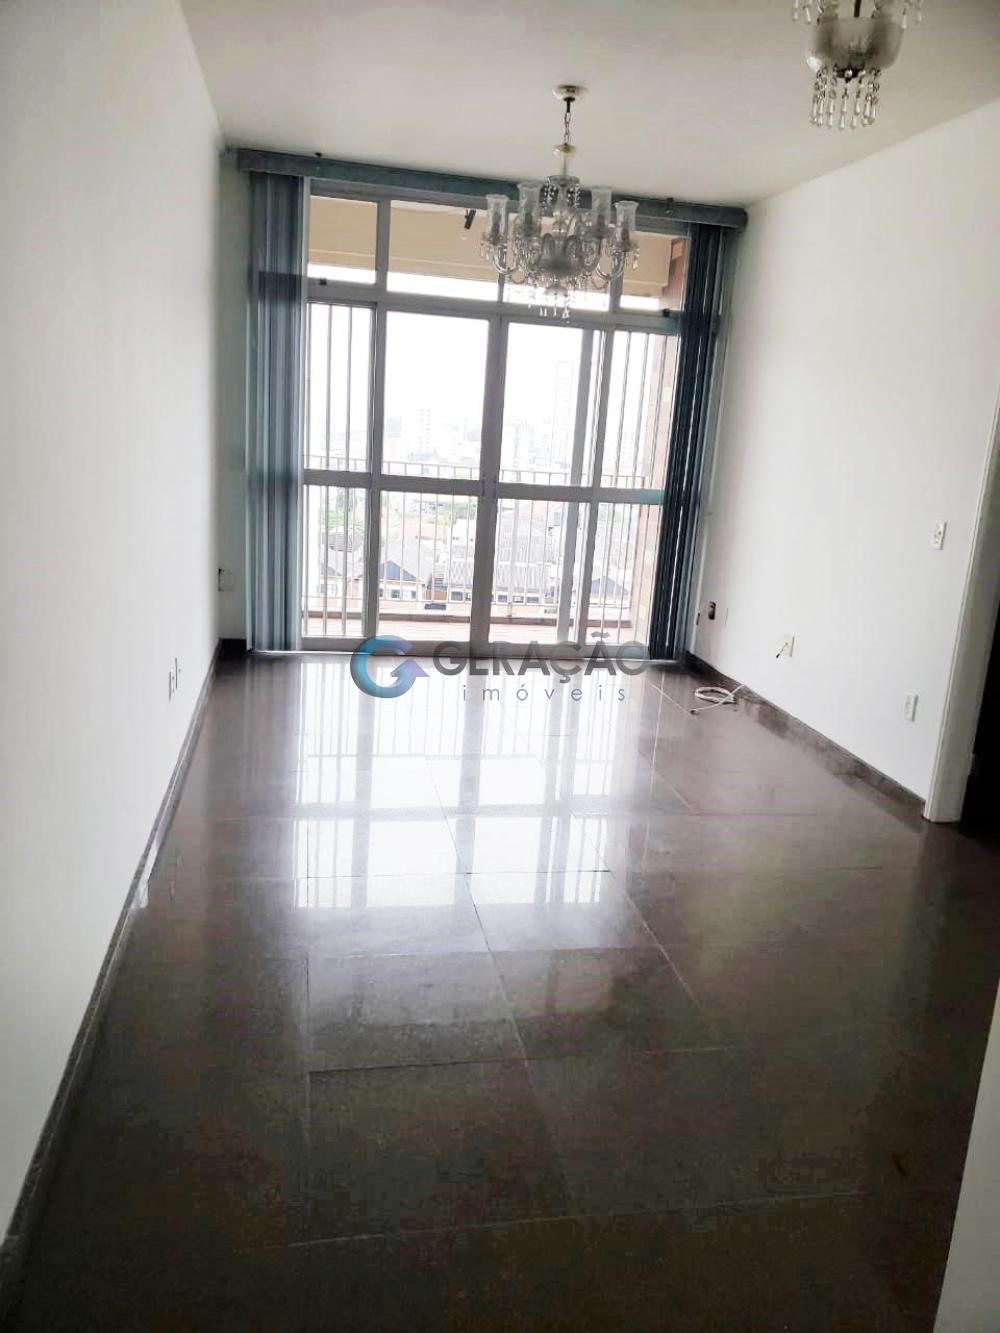 Alugar Apartamento / Padrão em São José dos Campos R$ 1.500,00 - Foto 3